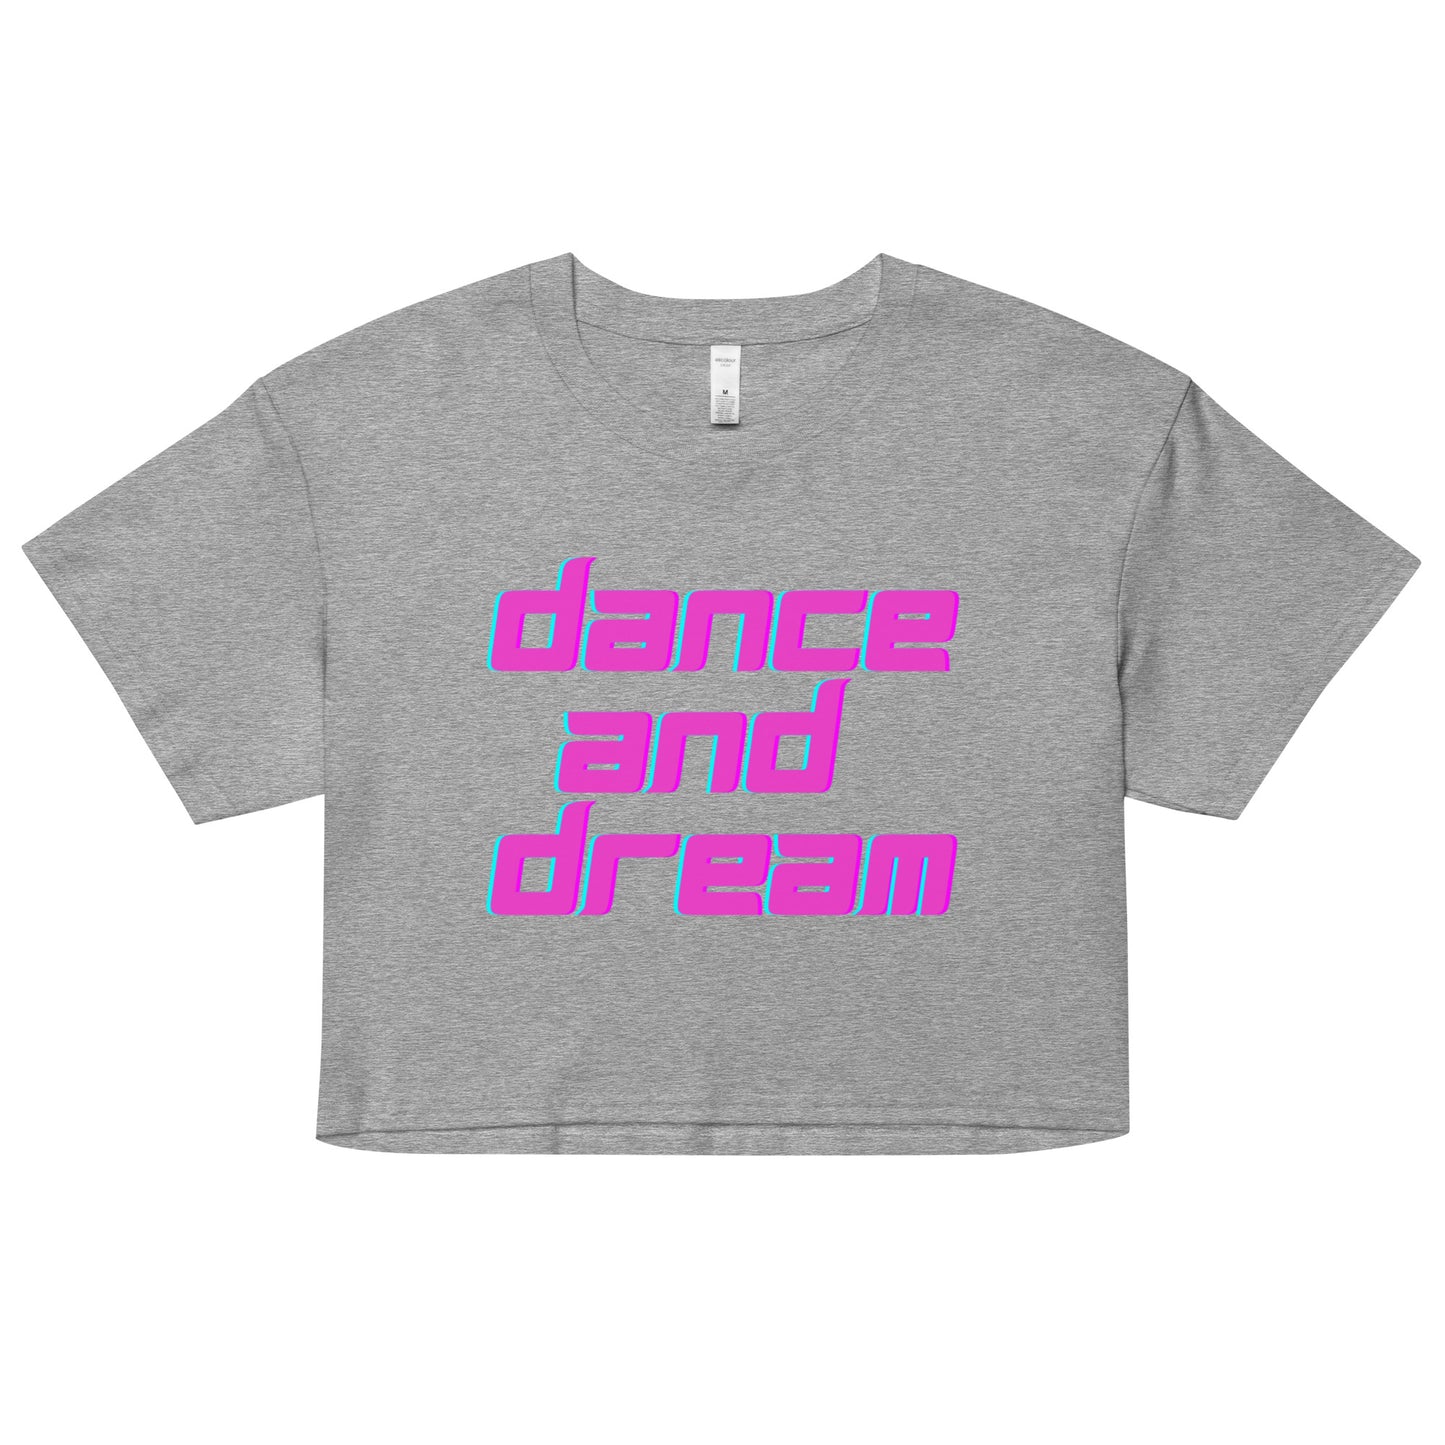 Dance and Dream Women’s crop top